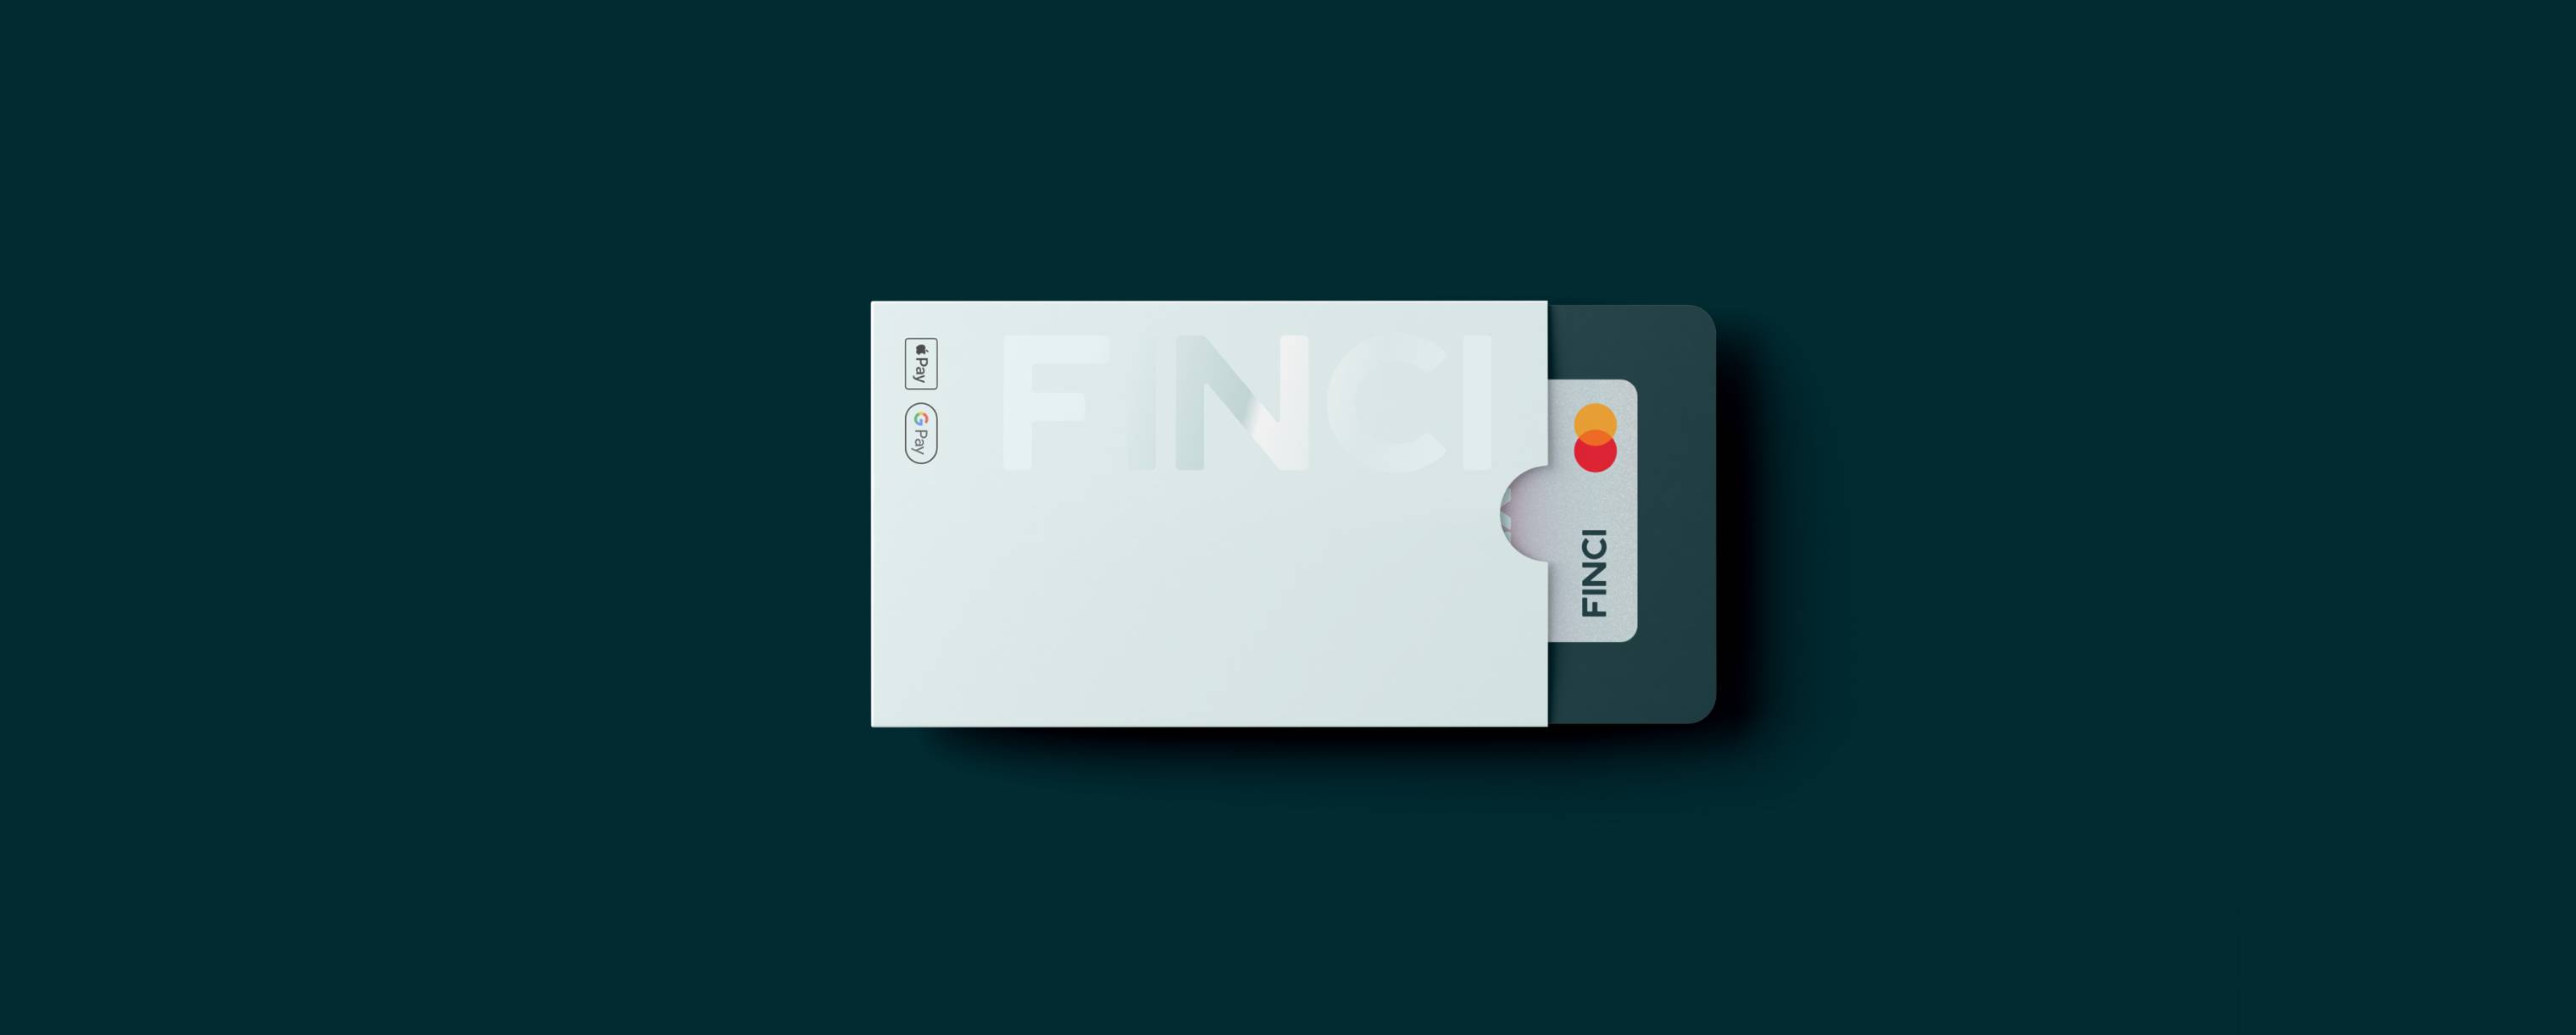 Add Finci Debit Card to App